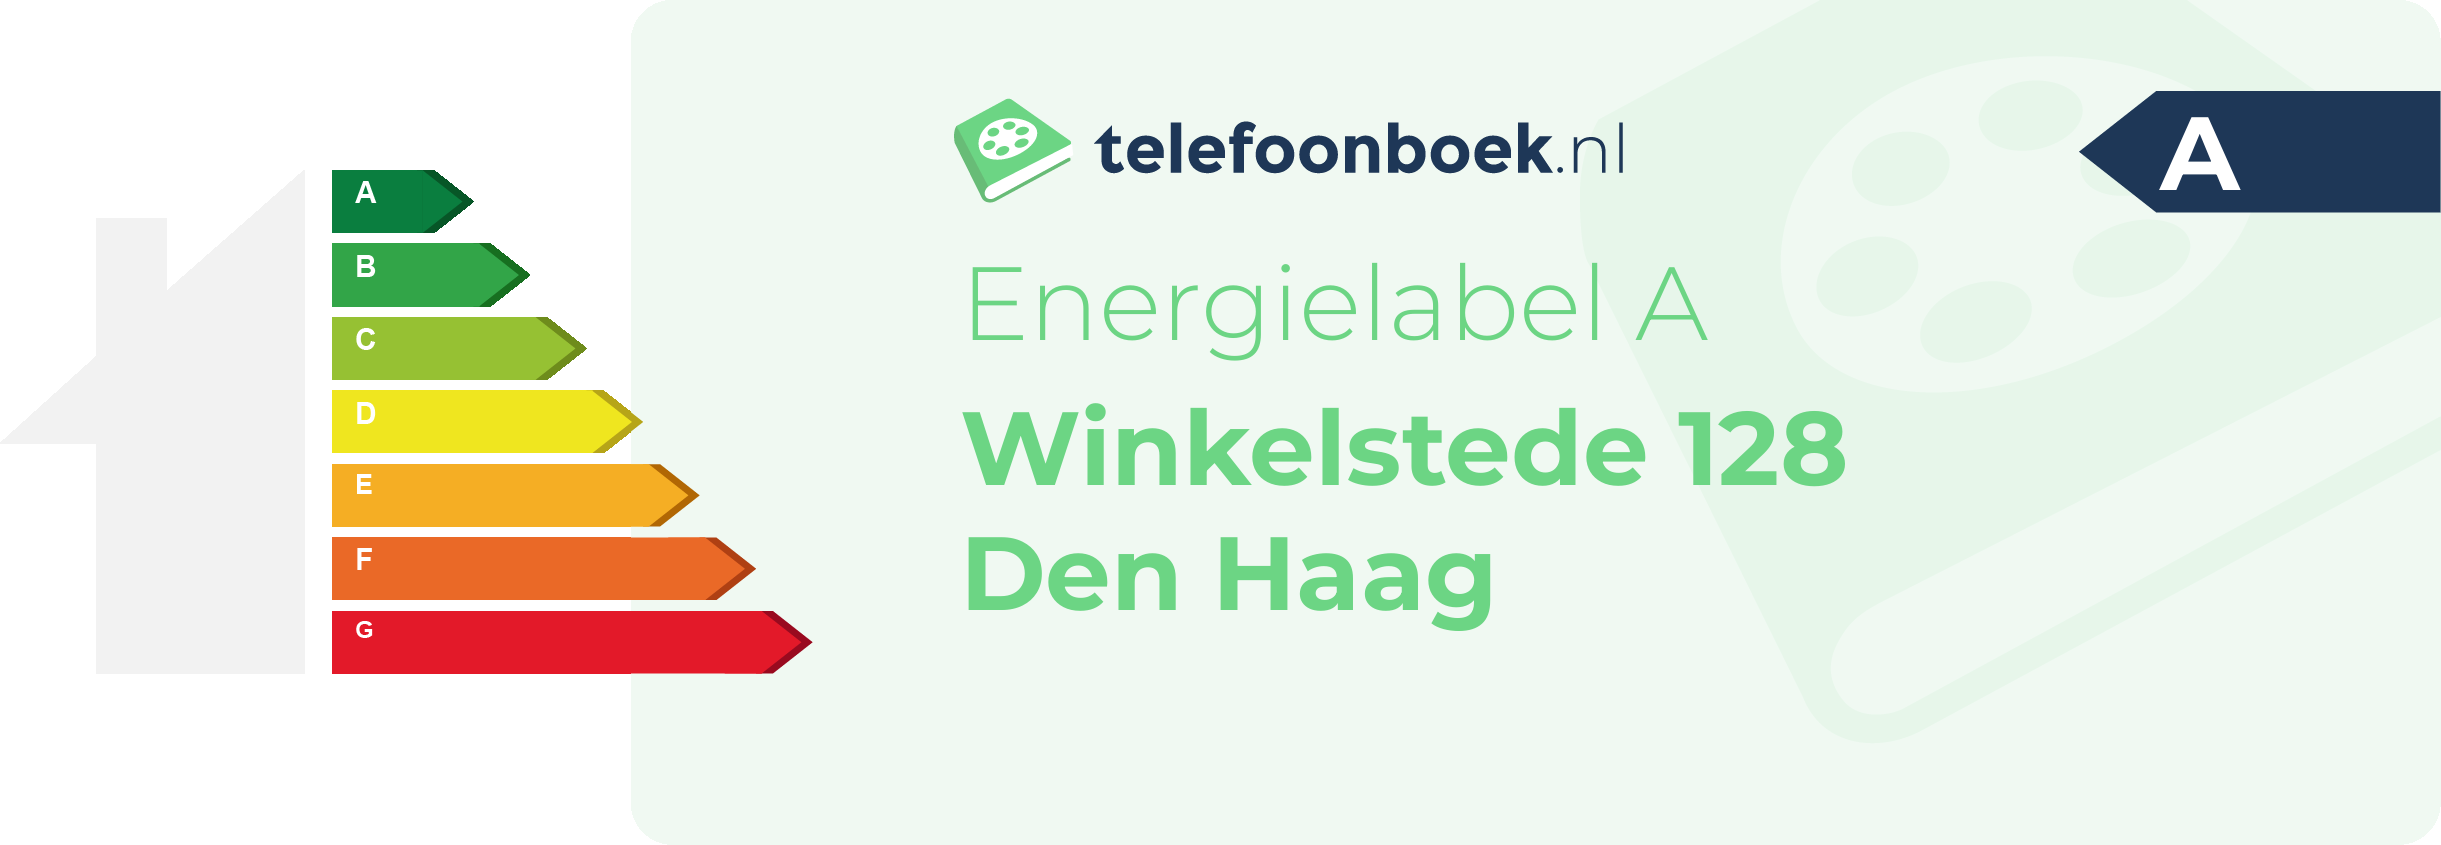 Energielabel Winkelstede 128 Den Haag